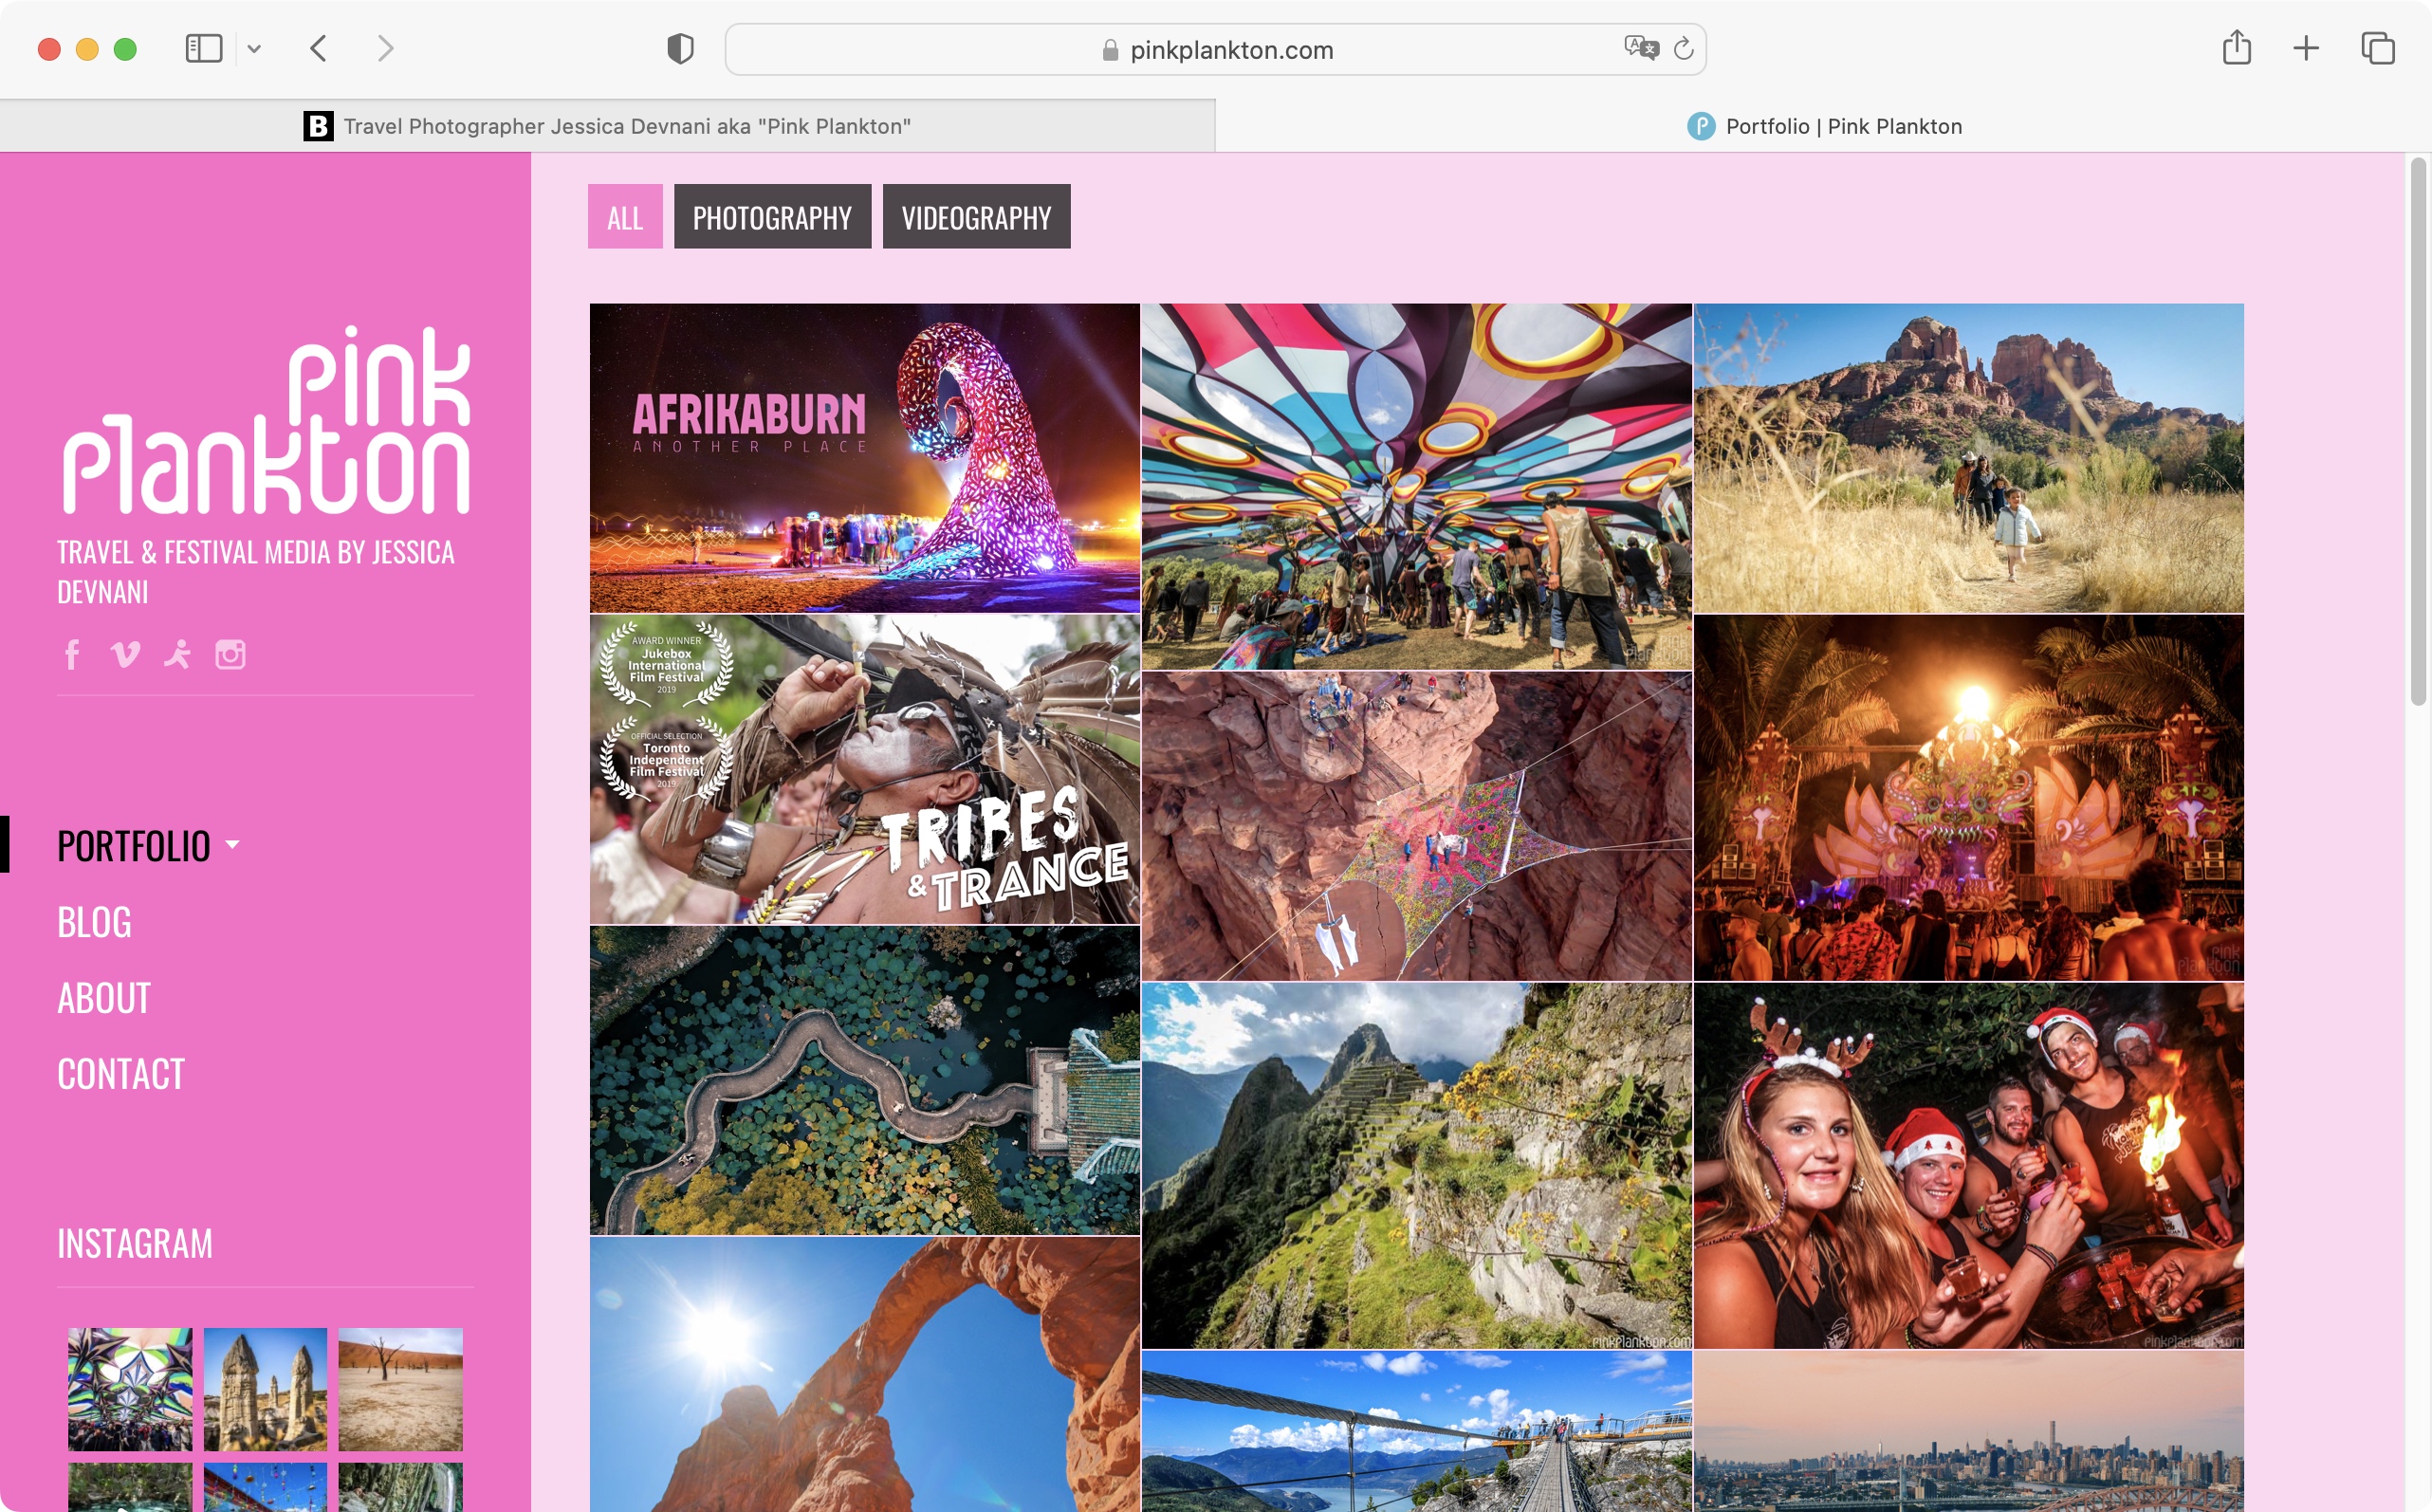 Burst by Shopify, um site de fotos gratuito para empresas